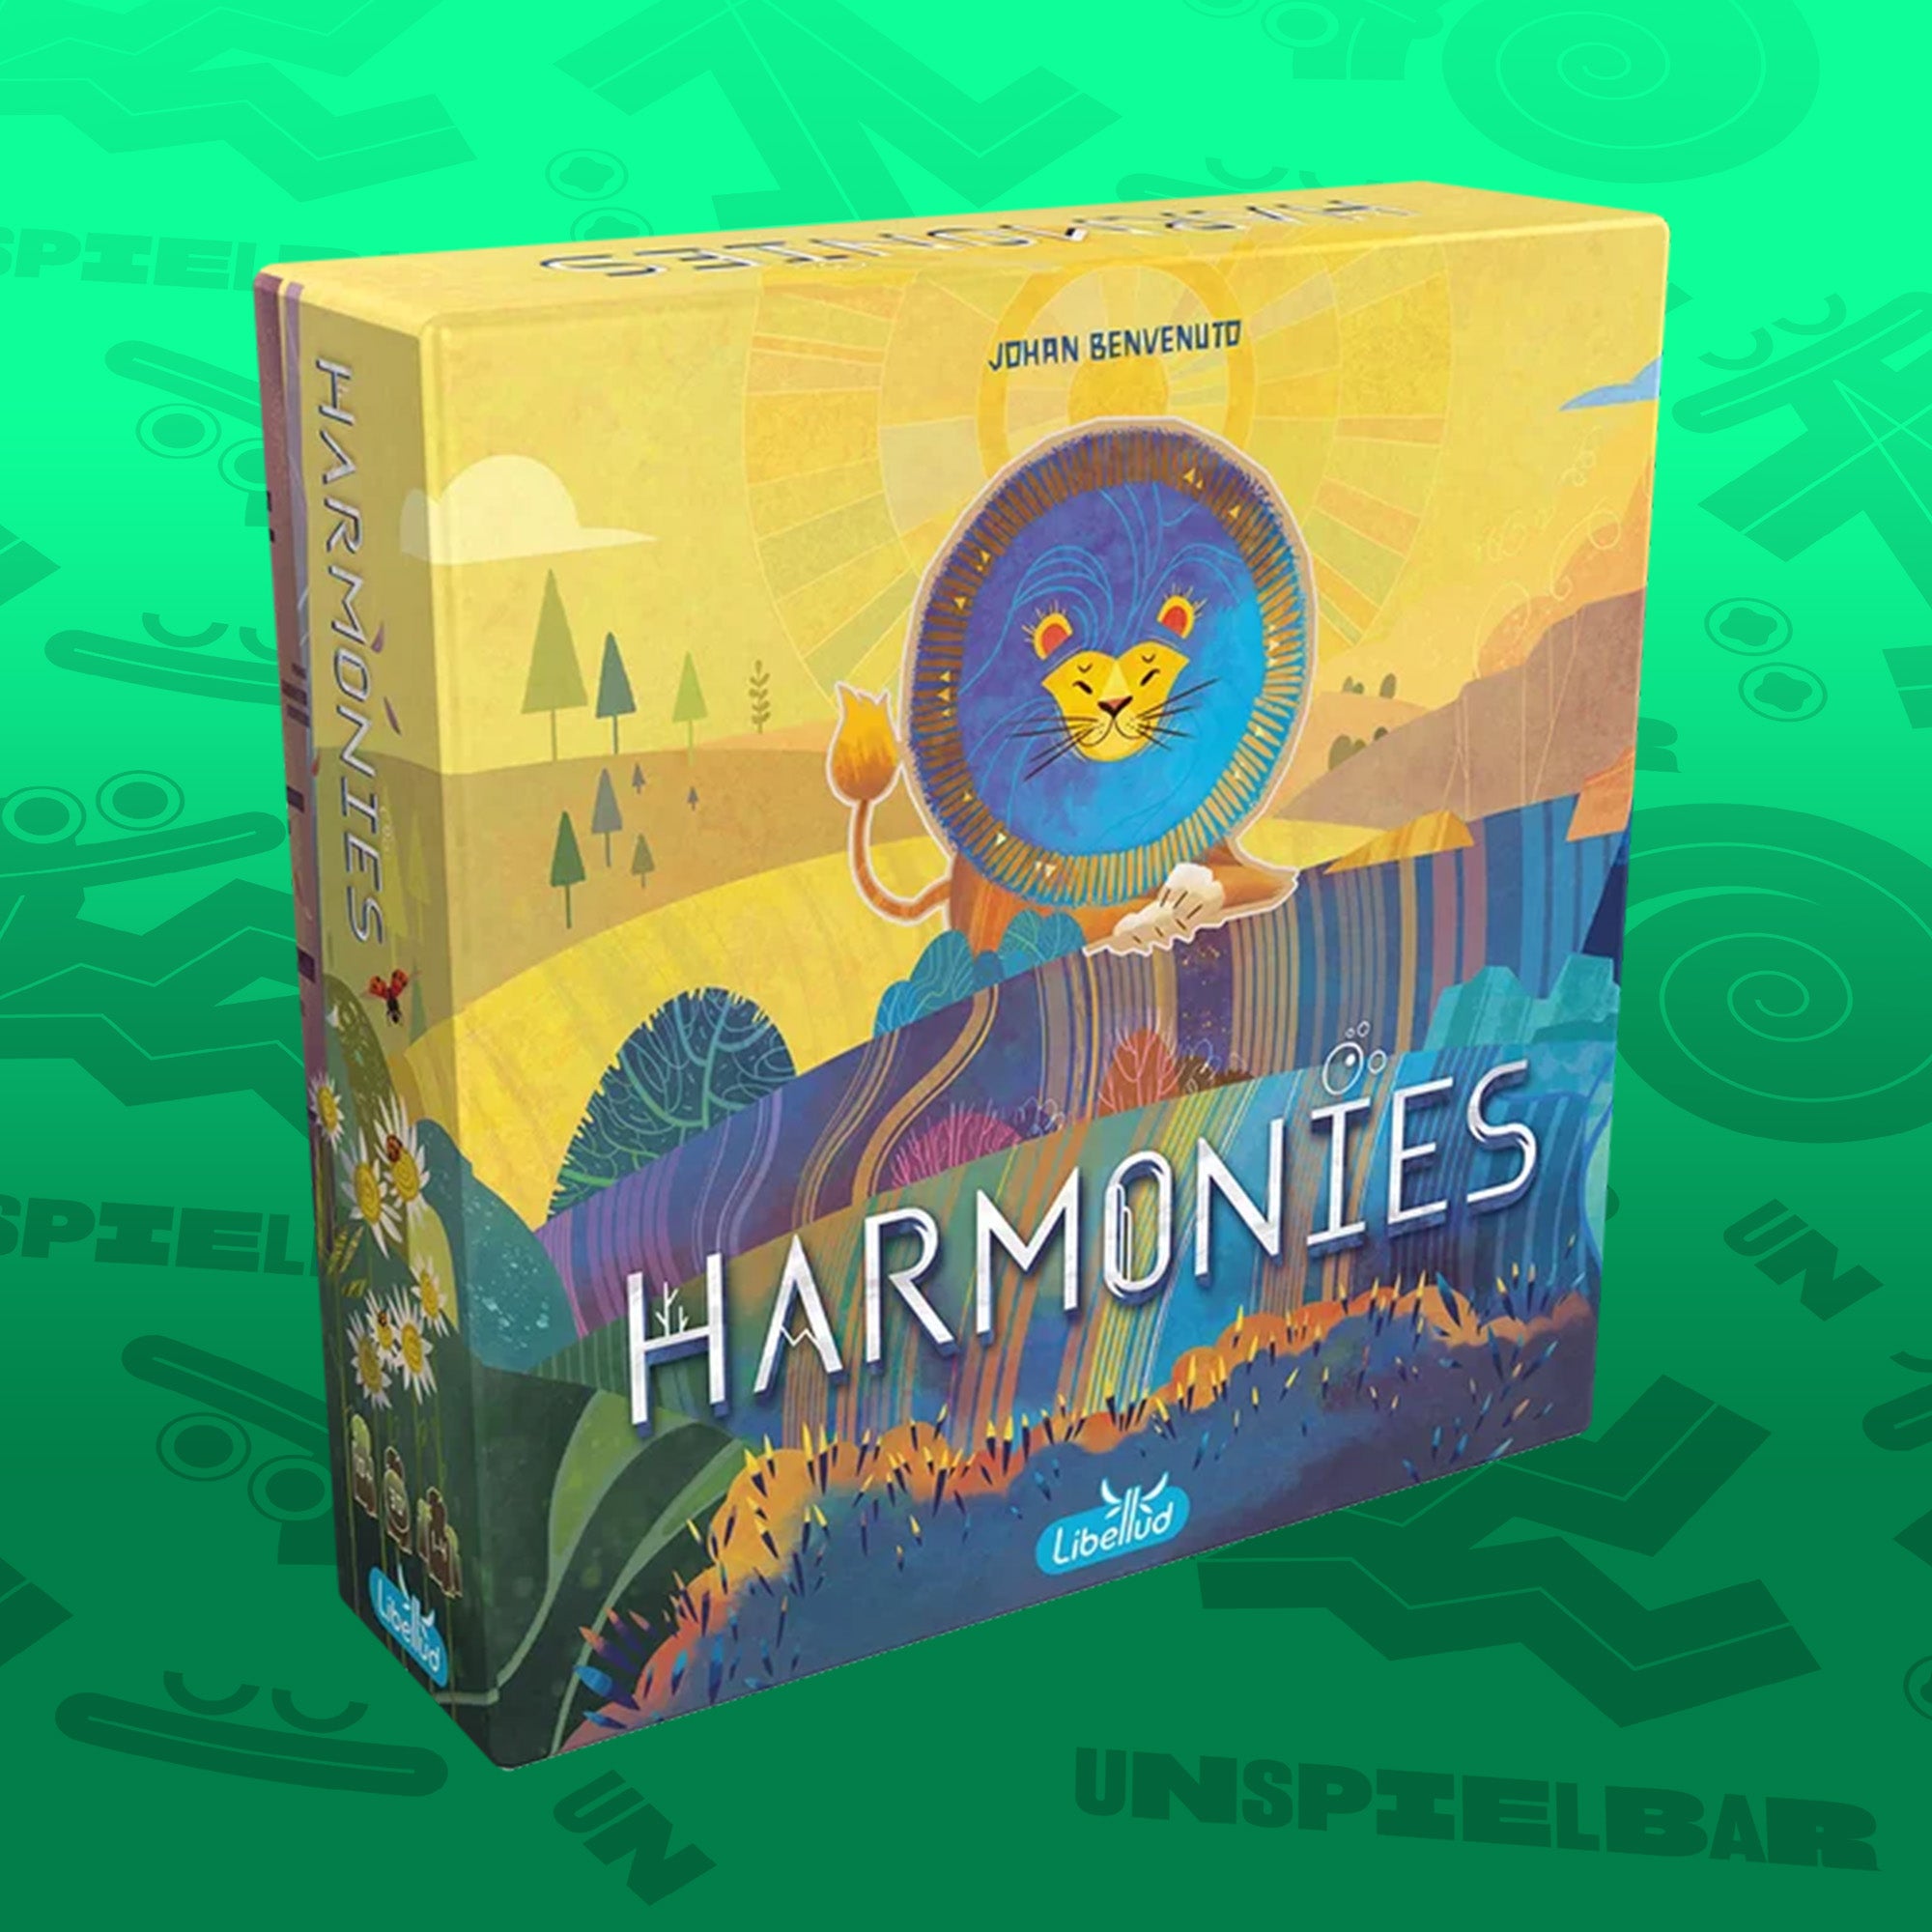 Harmonies (DE)